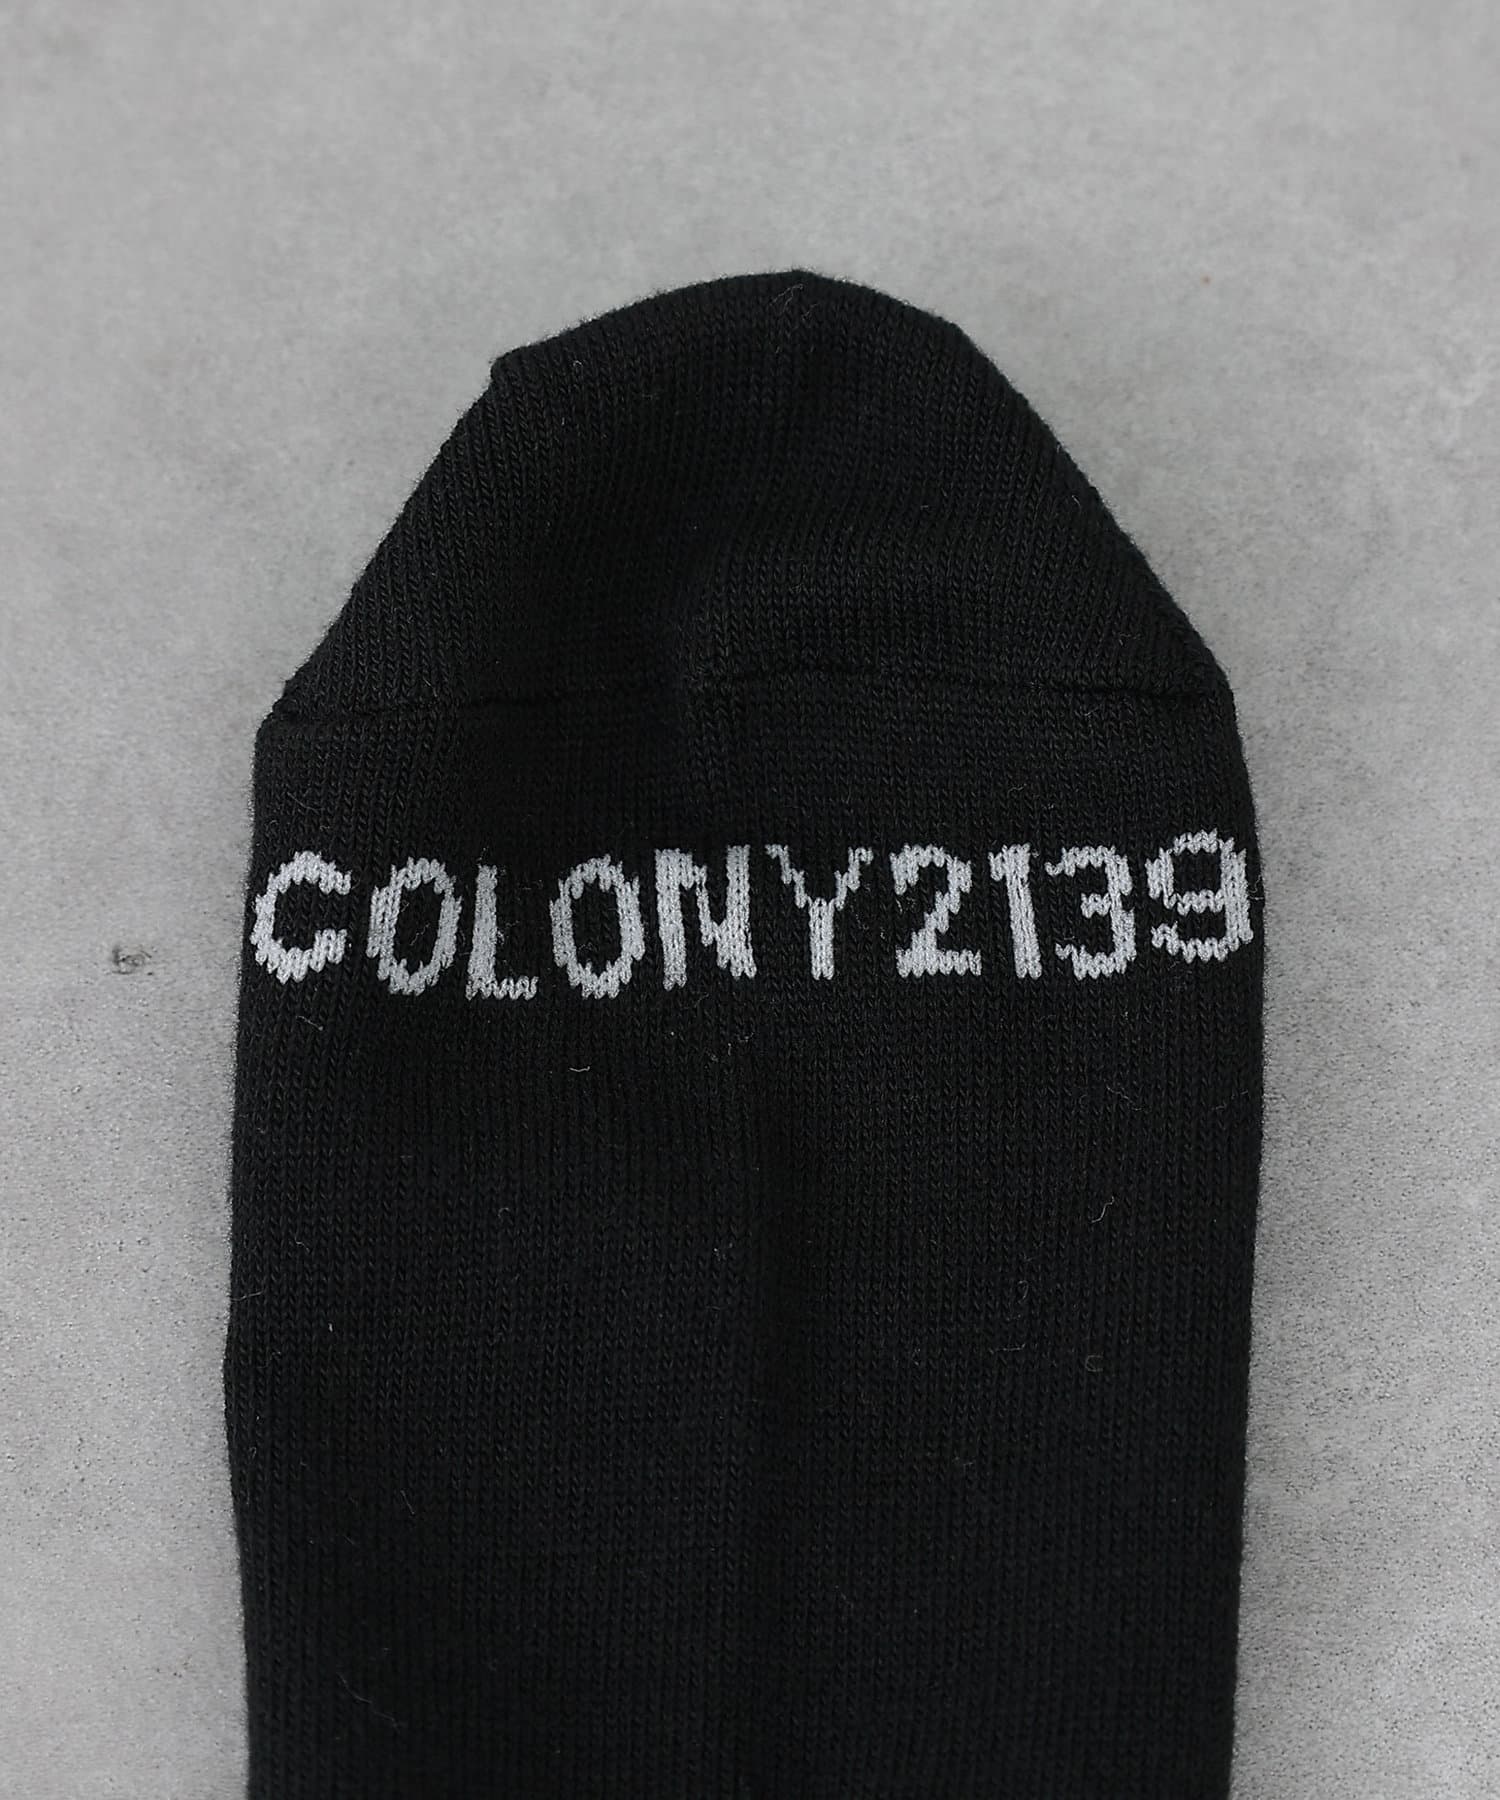 COLONY 2139(コロニー トゥーワンスリーナイン) ロゴ刺繍ソックス